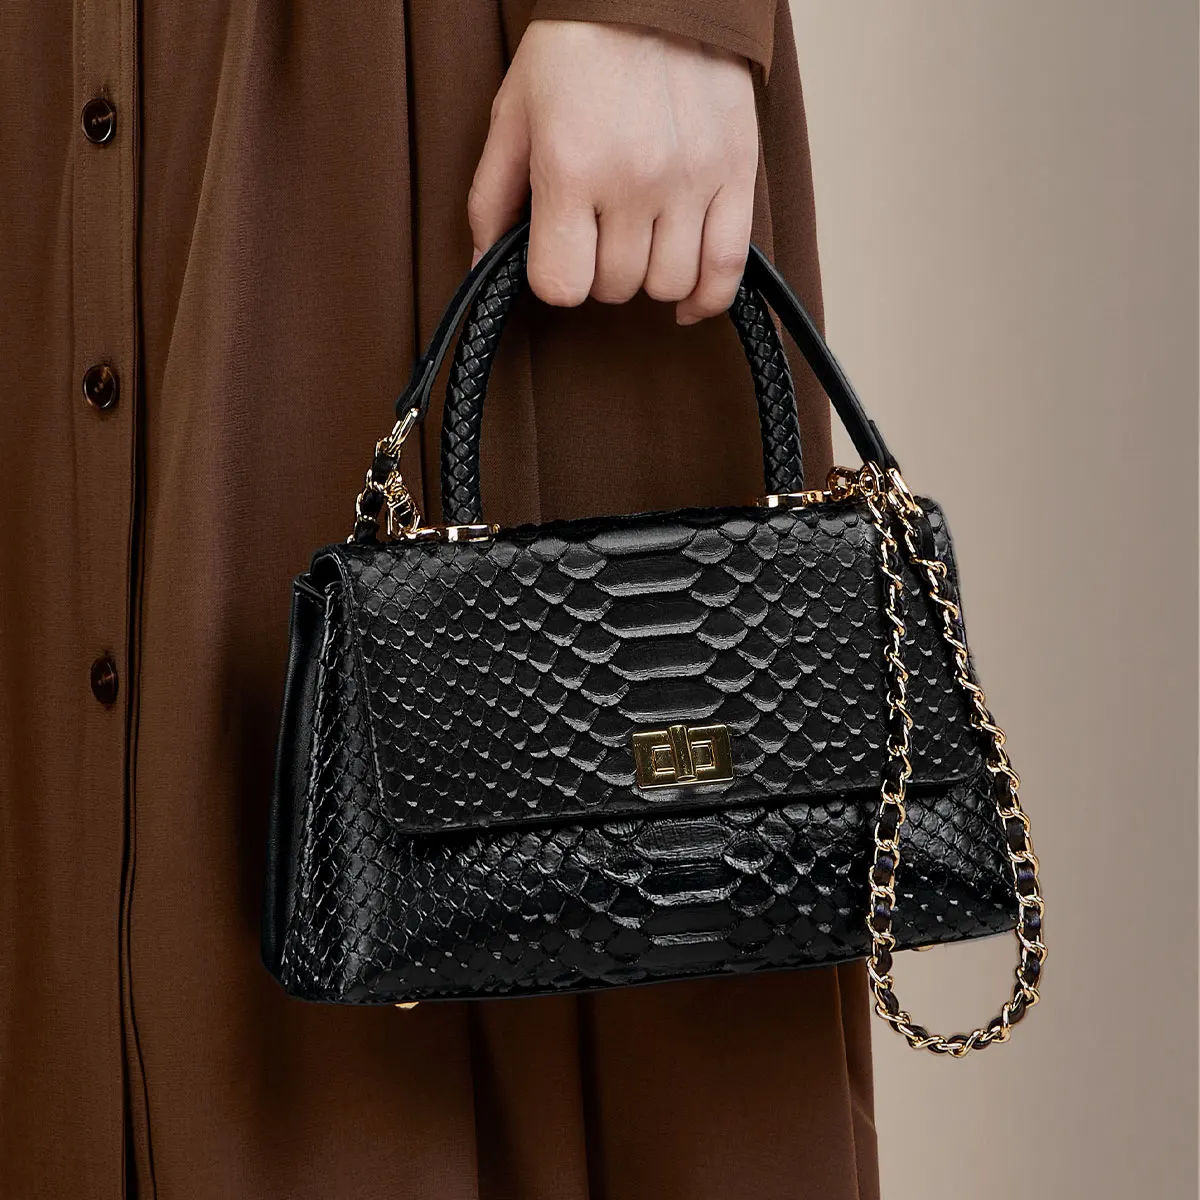 ZOOLER Genuine Leather Women Handbag Business Shoulder Bag First Layer Skin Purses College Girl Original Design Pattern#QS363